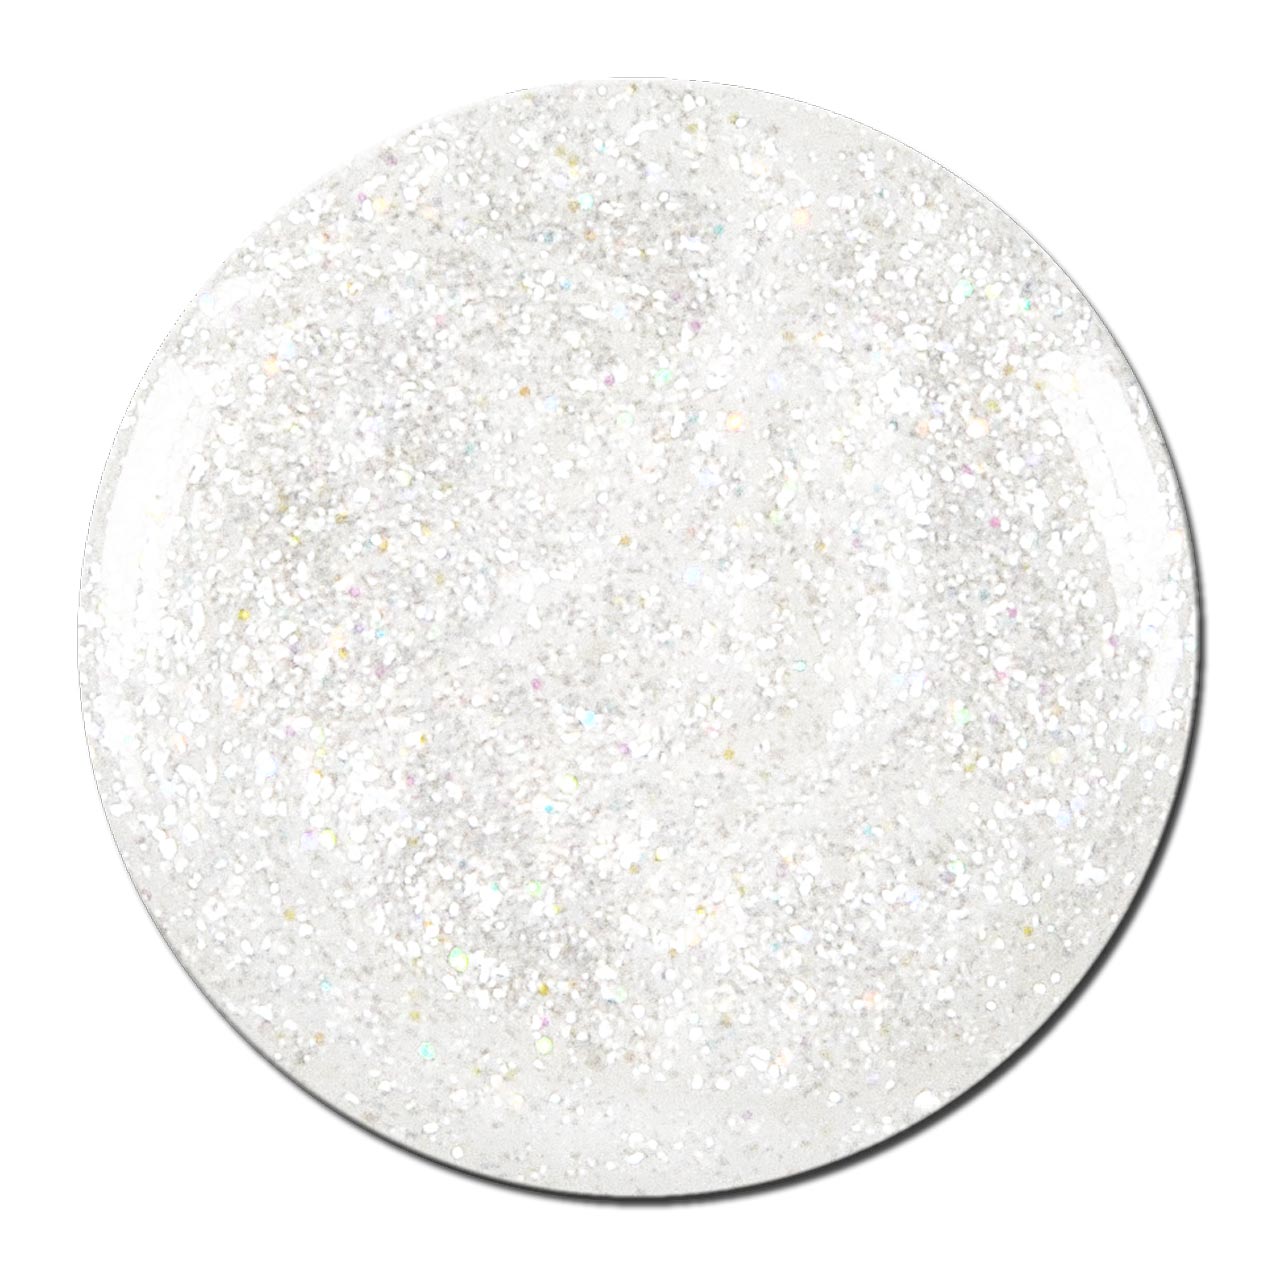 Bonetluxe Glittergel White-Gold Star